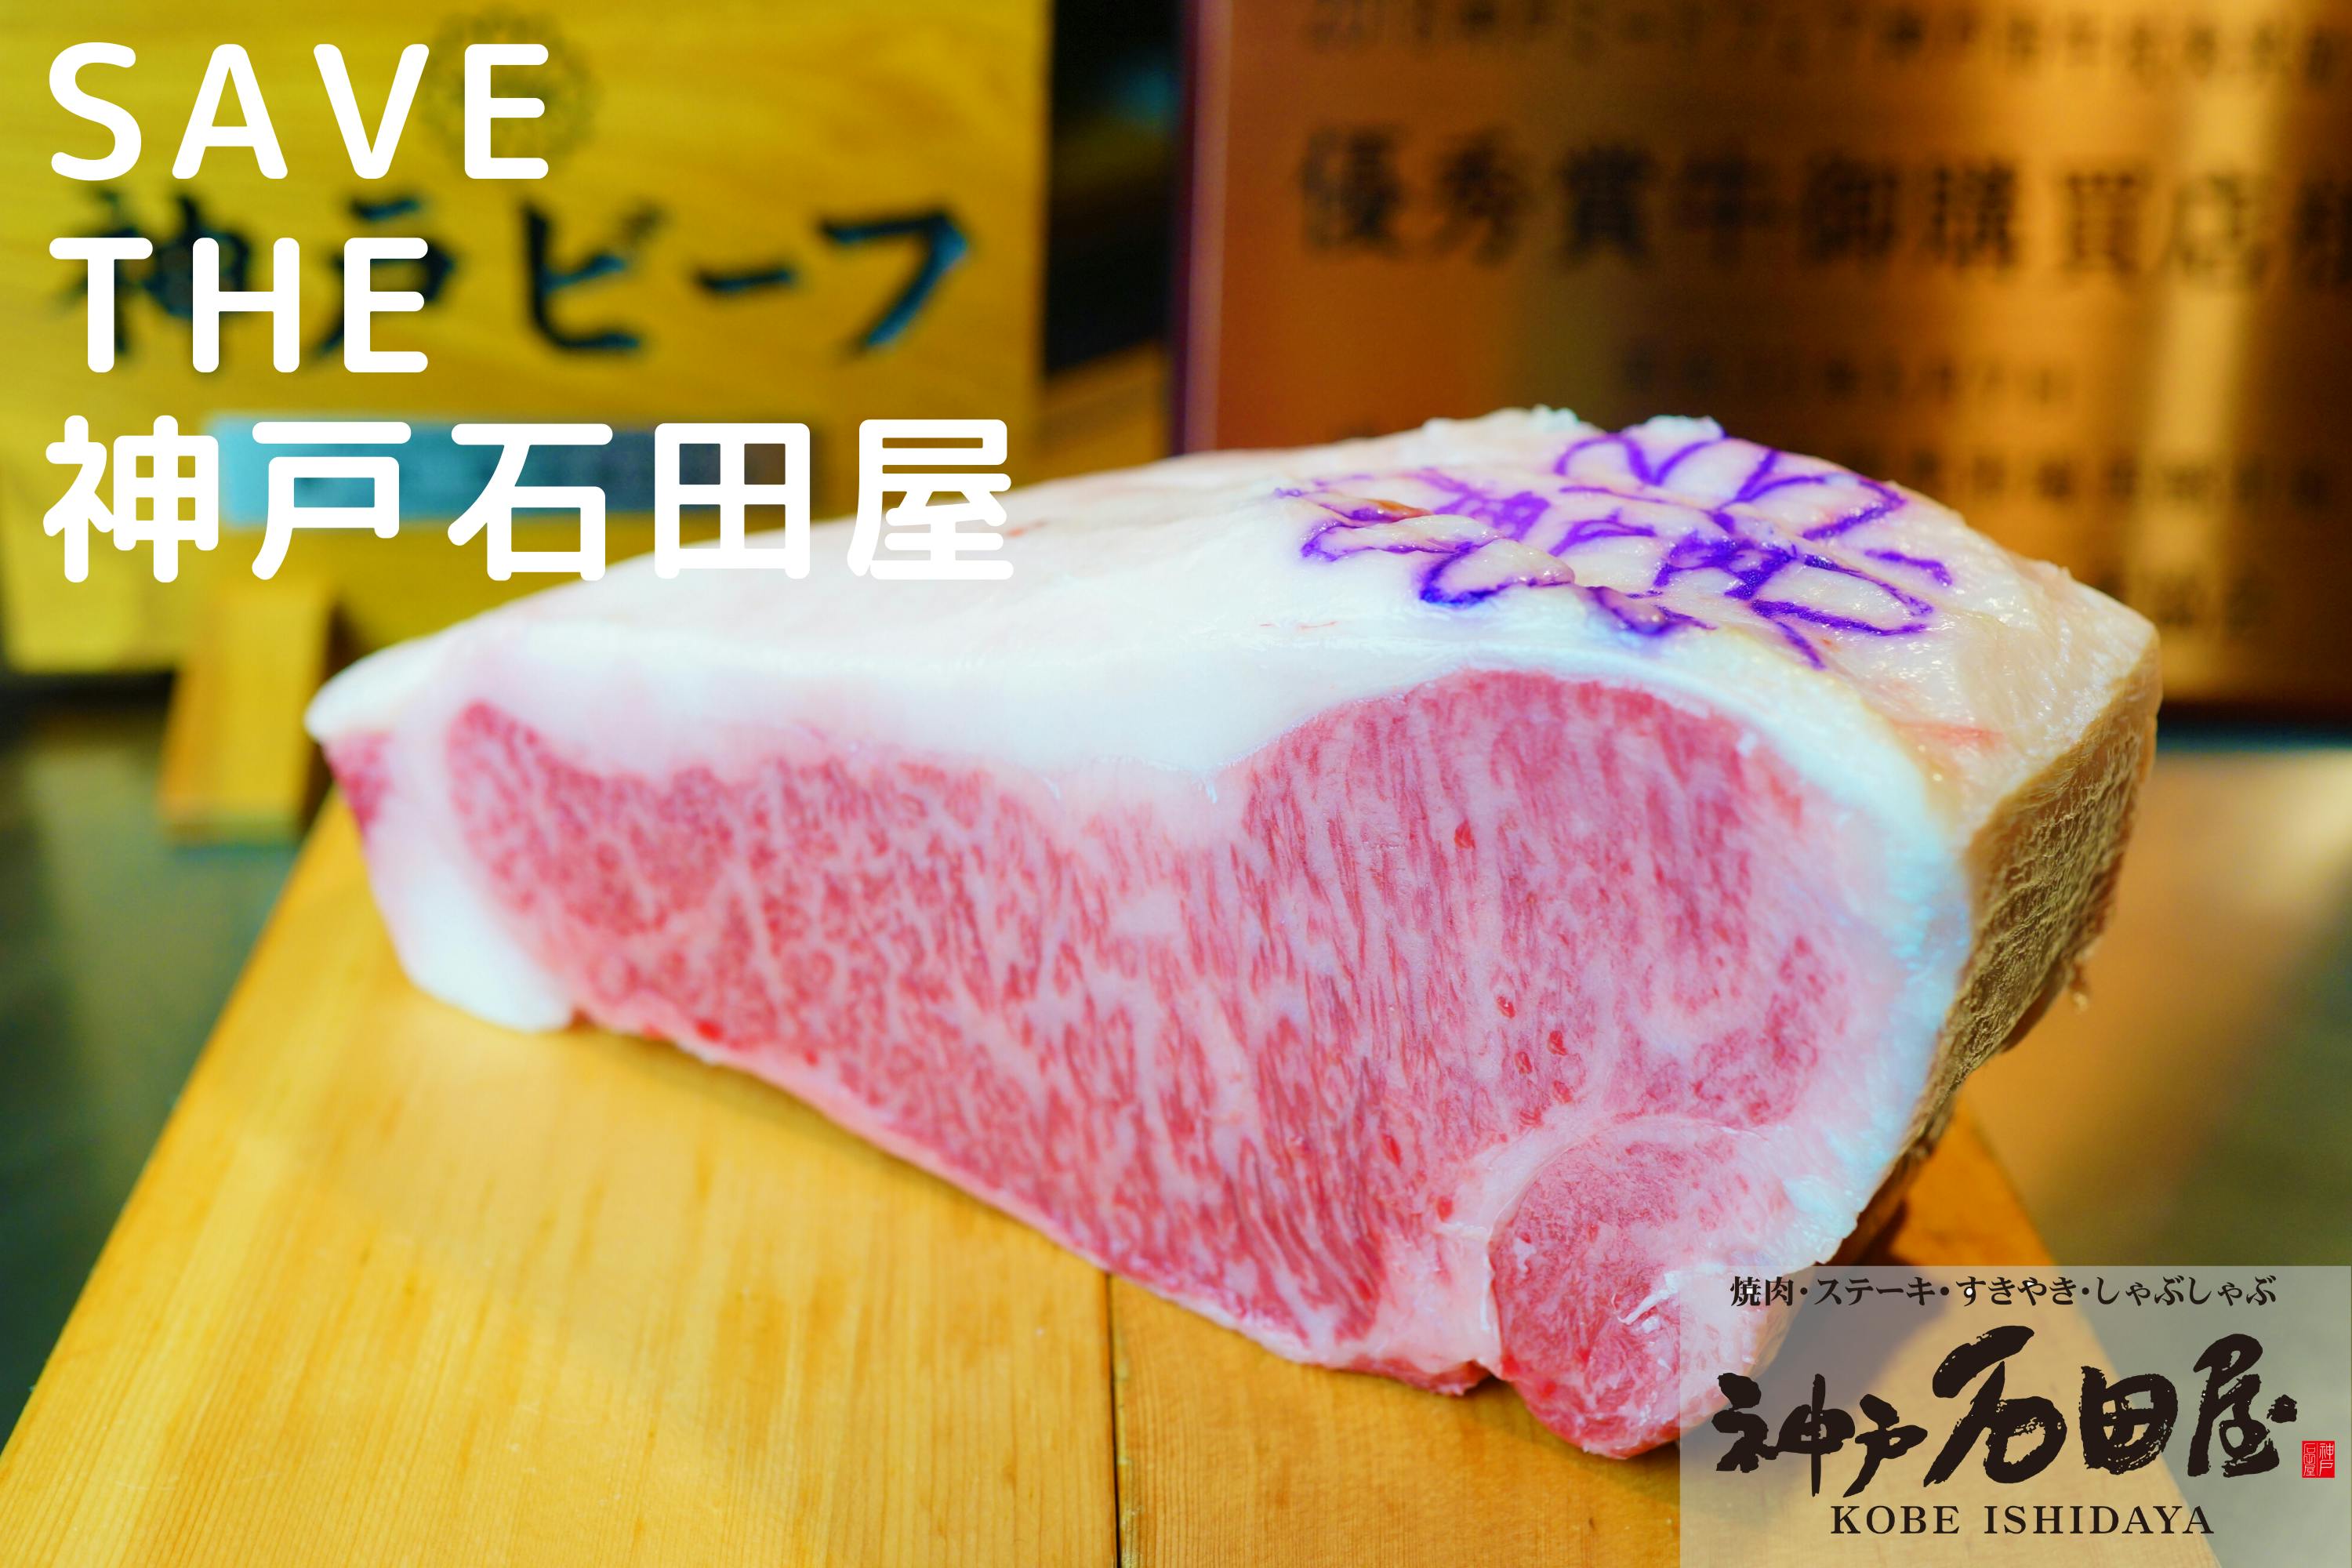 CAMPFIRE　コロナで売り上げ９割減。神戸石田屋こだわりの「厳選牛肉」を食べて欲しい！　(キャンプファイヤー)